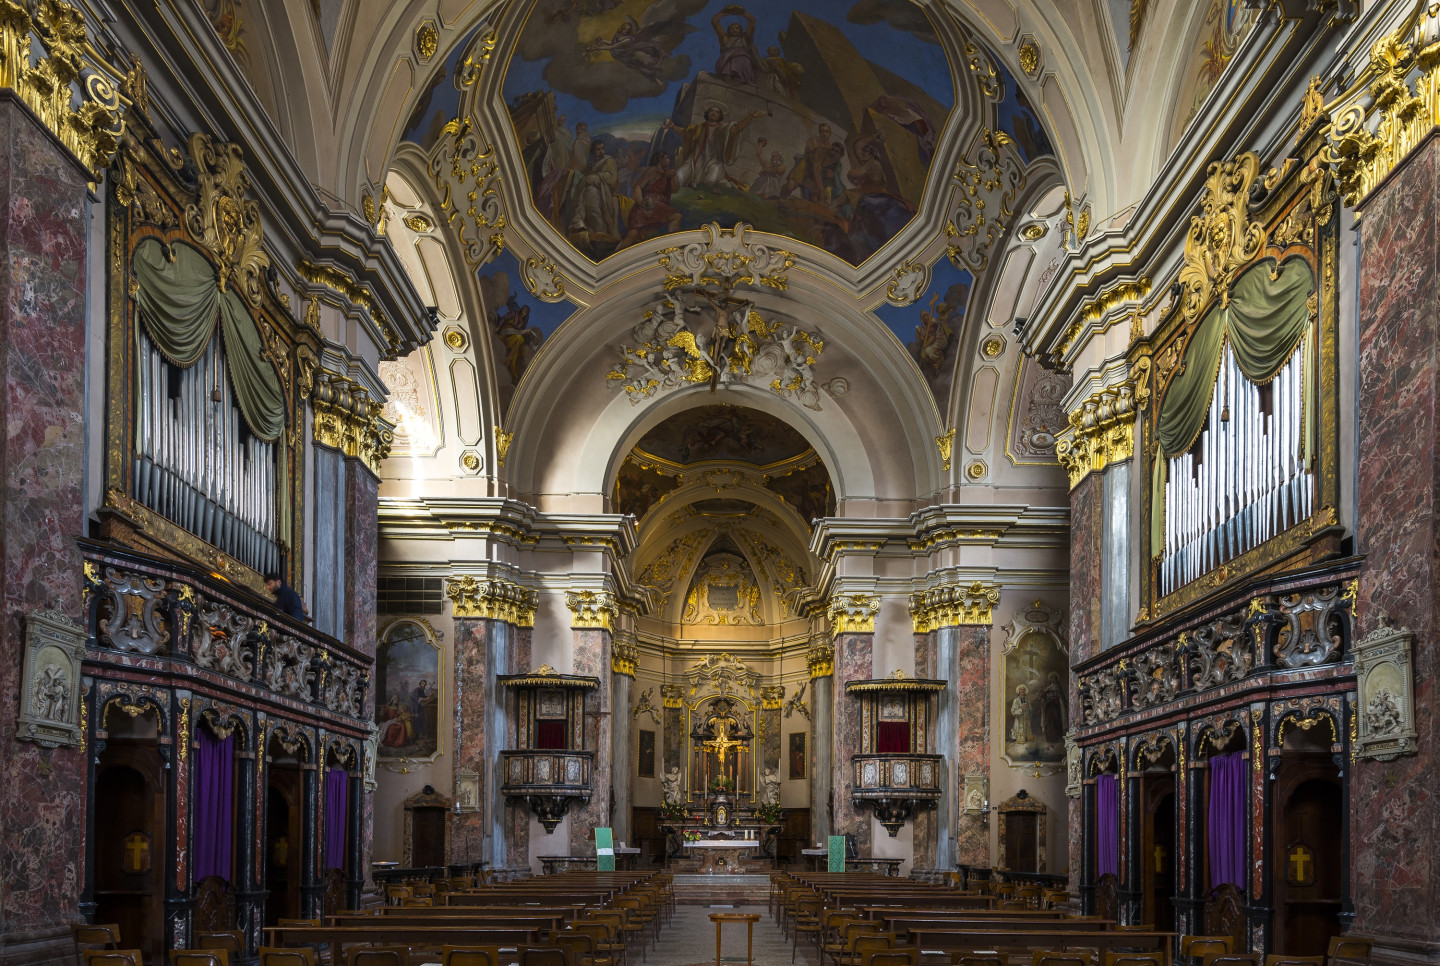 L'interno in stile barocco della Chiesa di Santo Stefano.